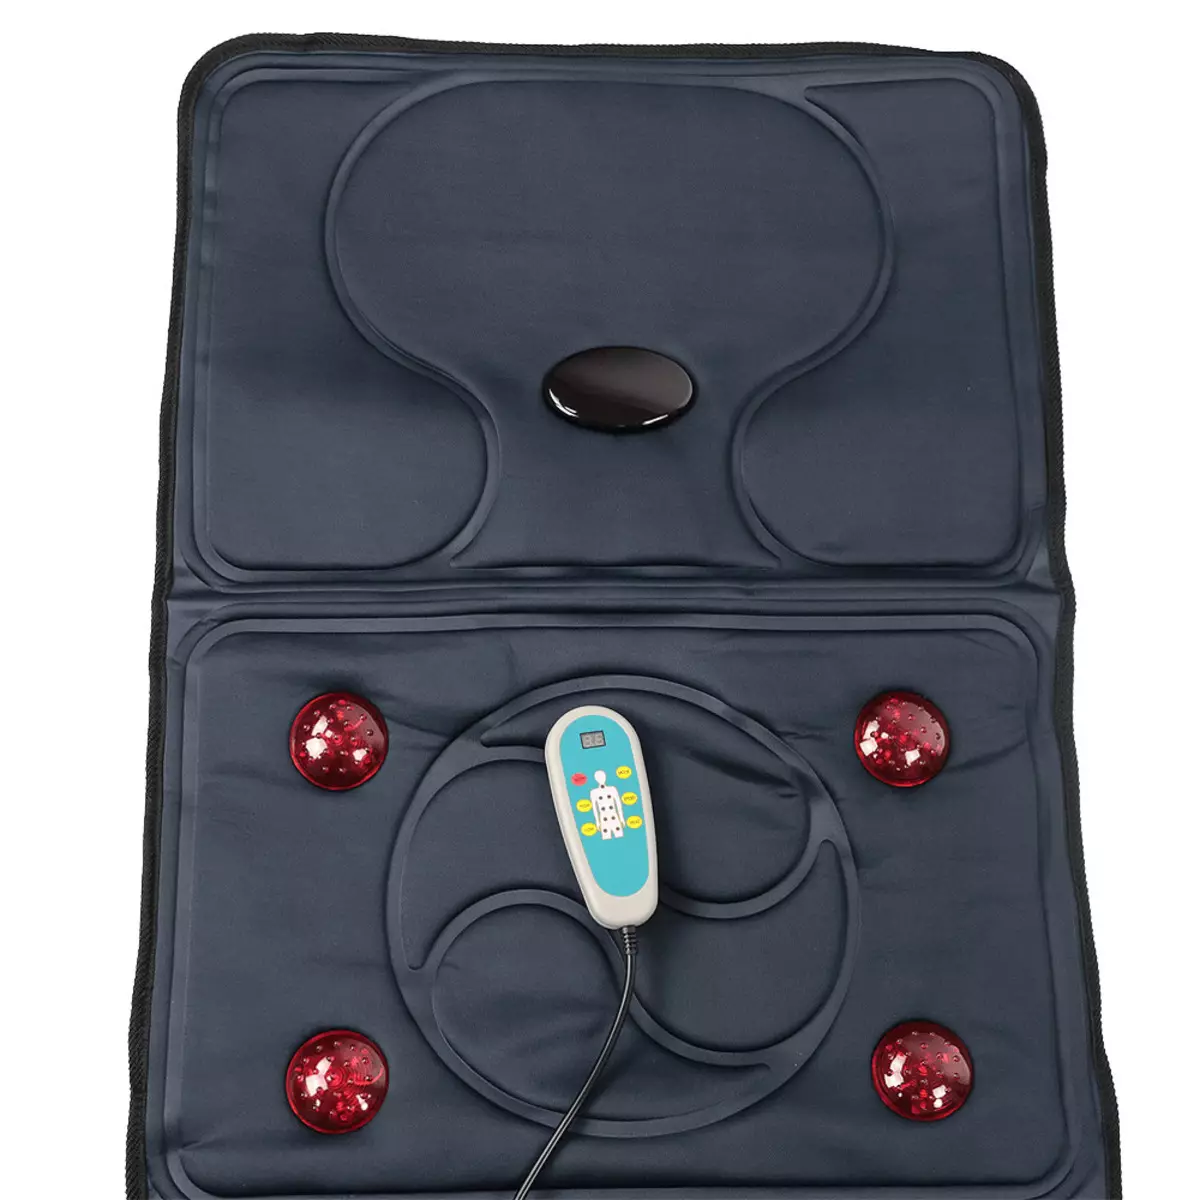 Colchones de masaje: colchonetas con panel de control y función de calefacción, colchones eléctricos Mensajes para el hogar con rodillos y vibraciones, comentarios de clientes 16326_23